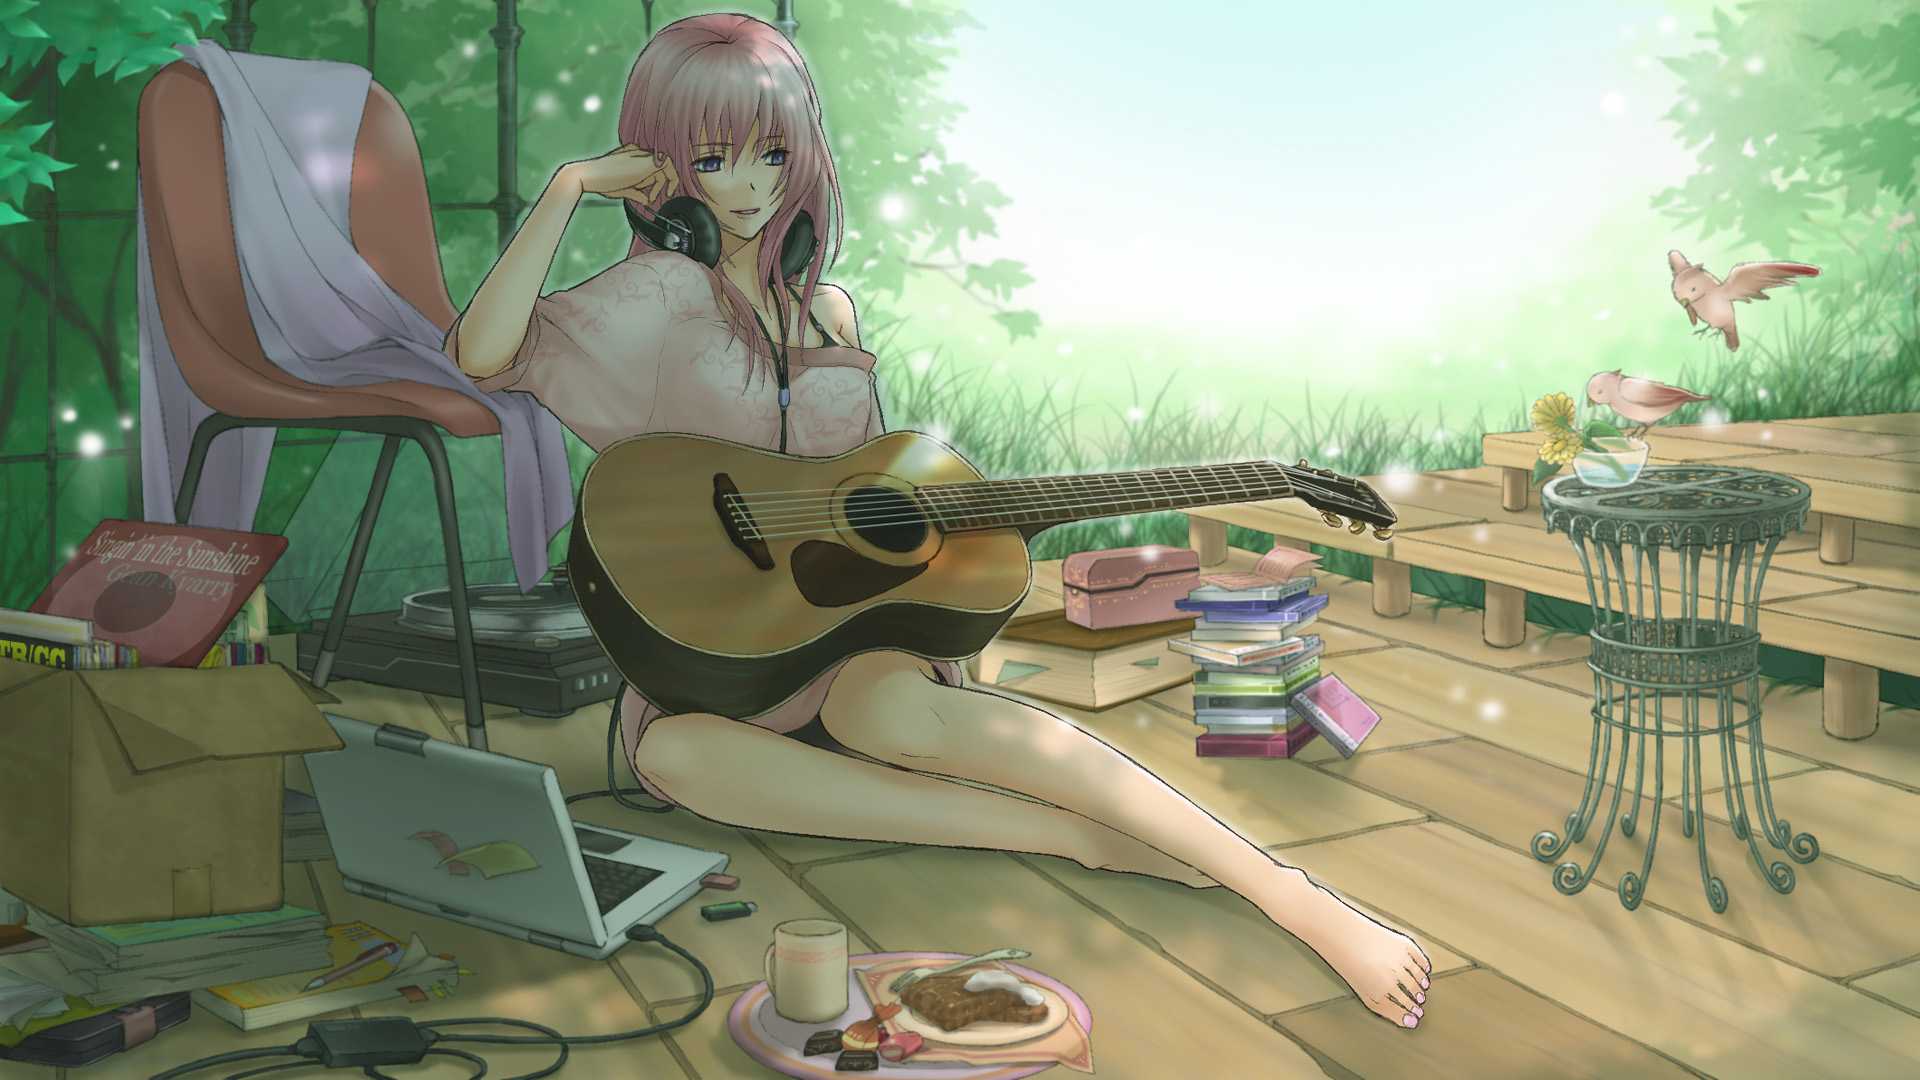 粉红色的头发,女生,赤脚,吉他,耳机,小鸟,壁纸